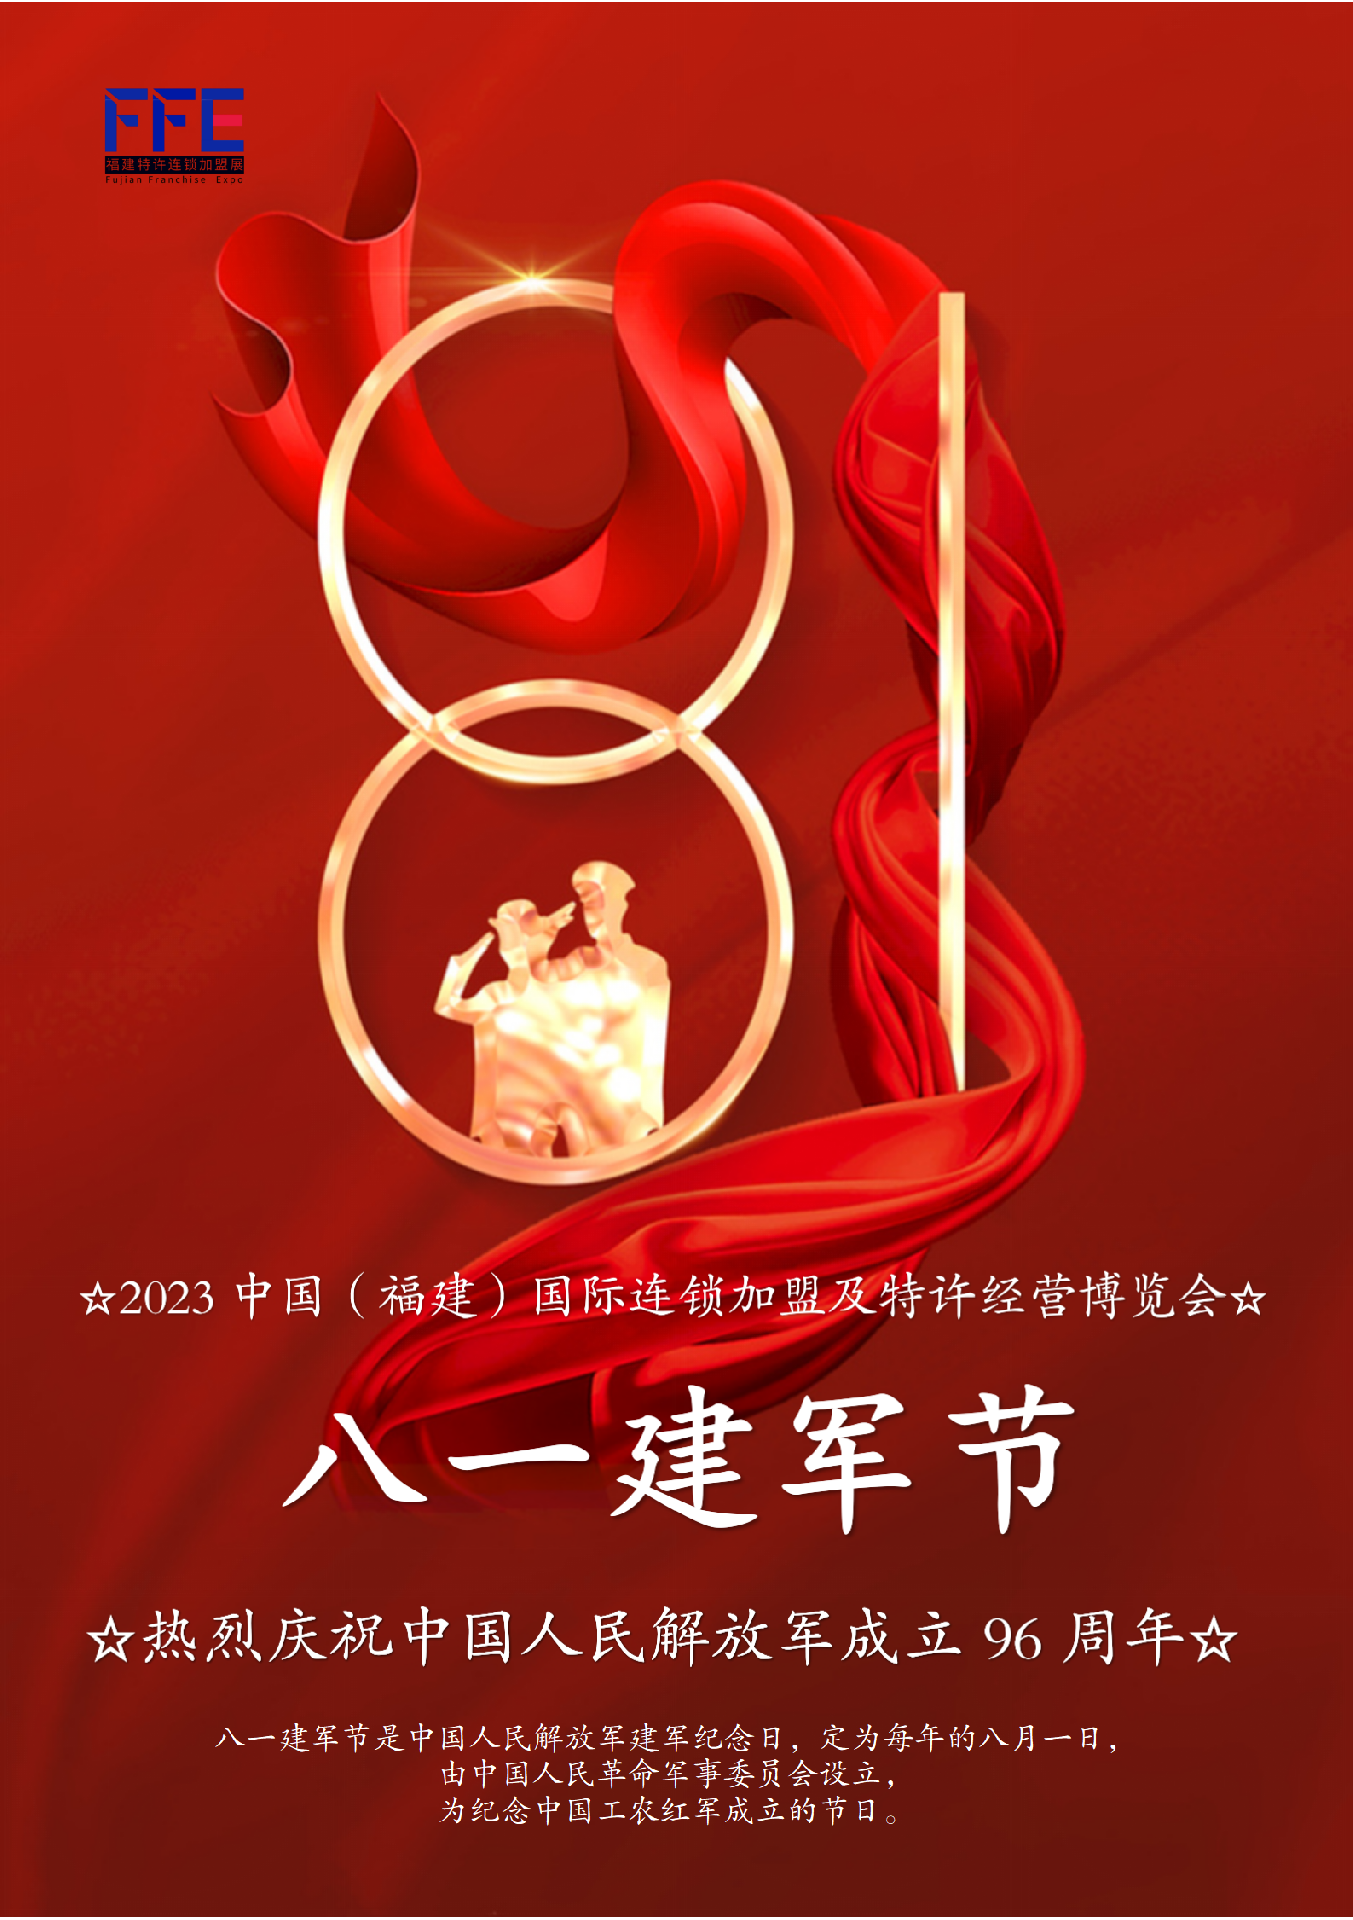 2023福建特许连锁加盟展览会热烈庆祝中国人民解放军成立96周年